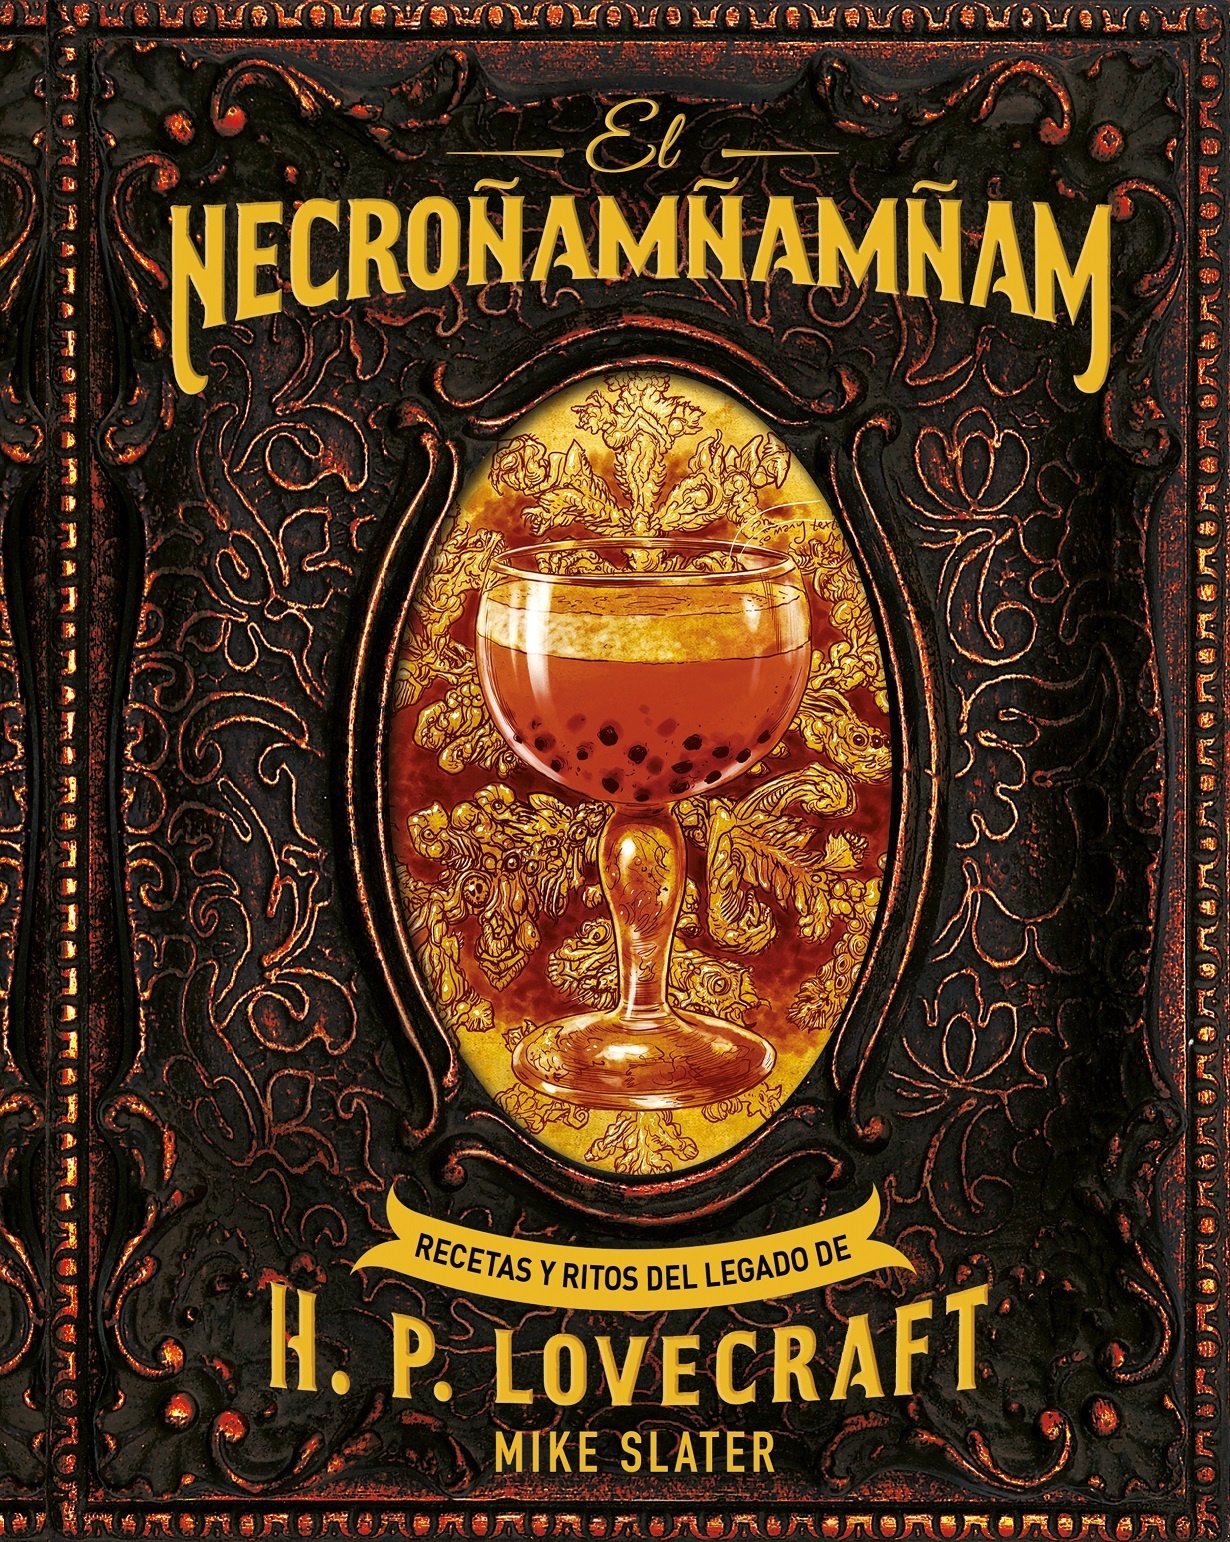 Necroñamñamñam, El "Recetas y ritos del legado de H. P. Lovecraft". 